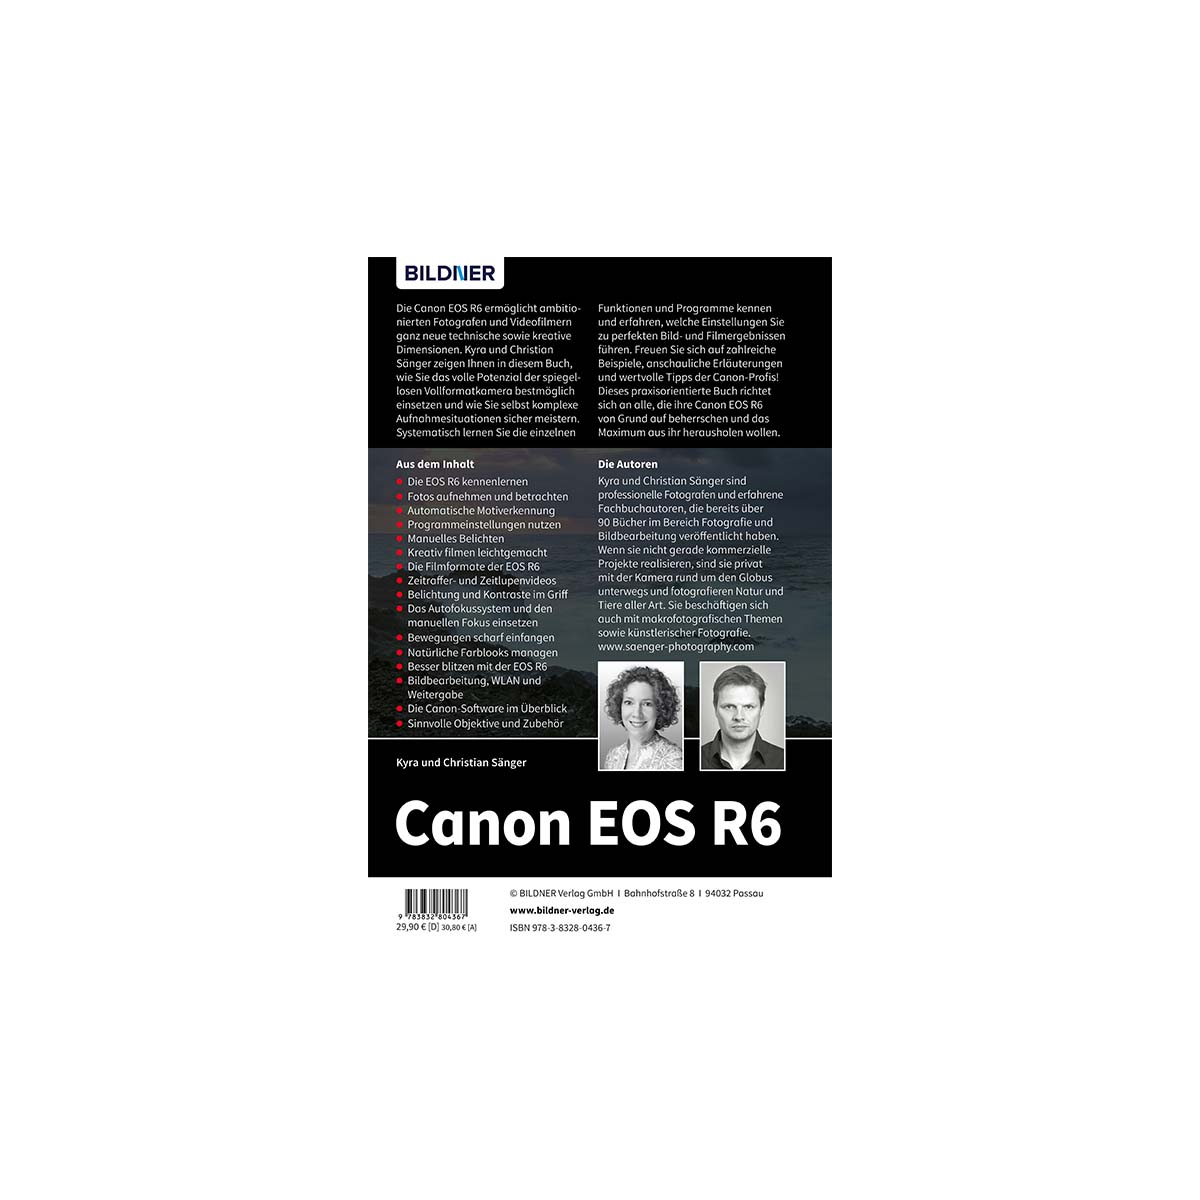 Canon EOS R6 - Praxisbuch Kamera! Das Ihrer zu umfangreiche